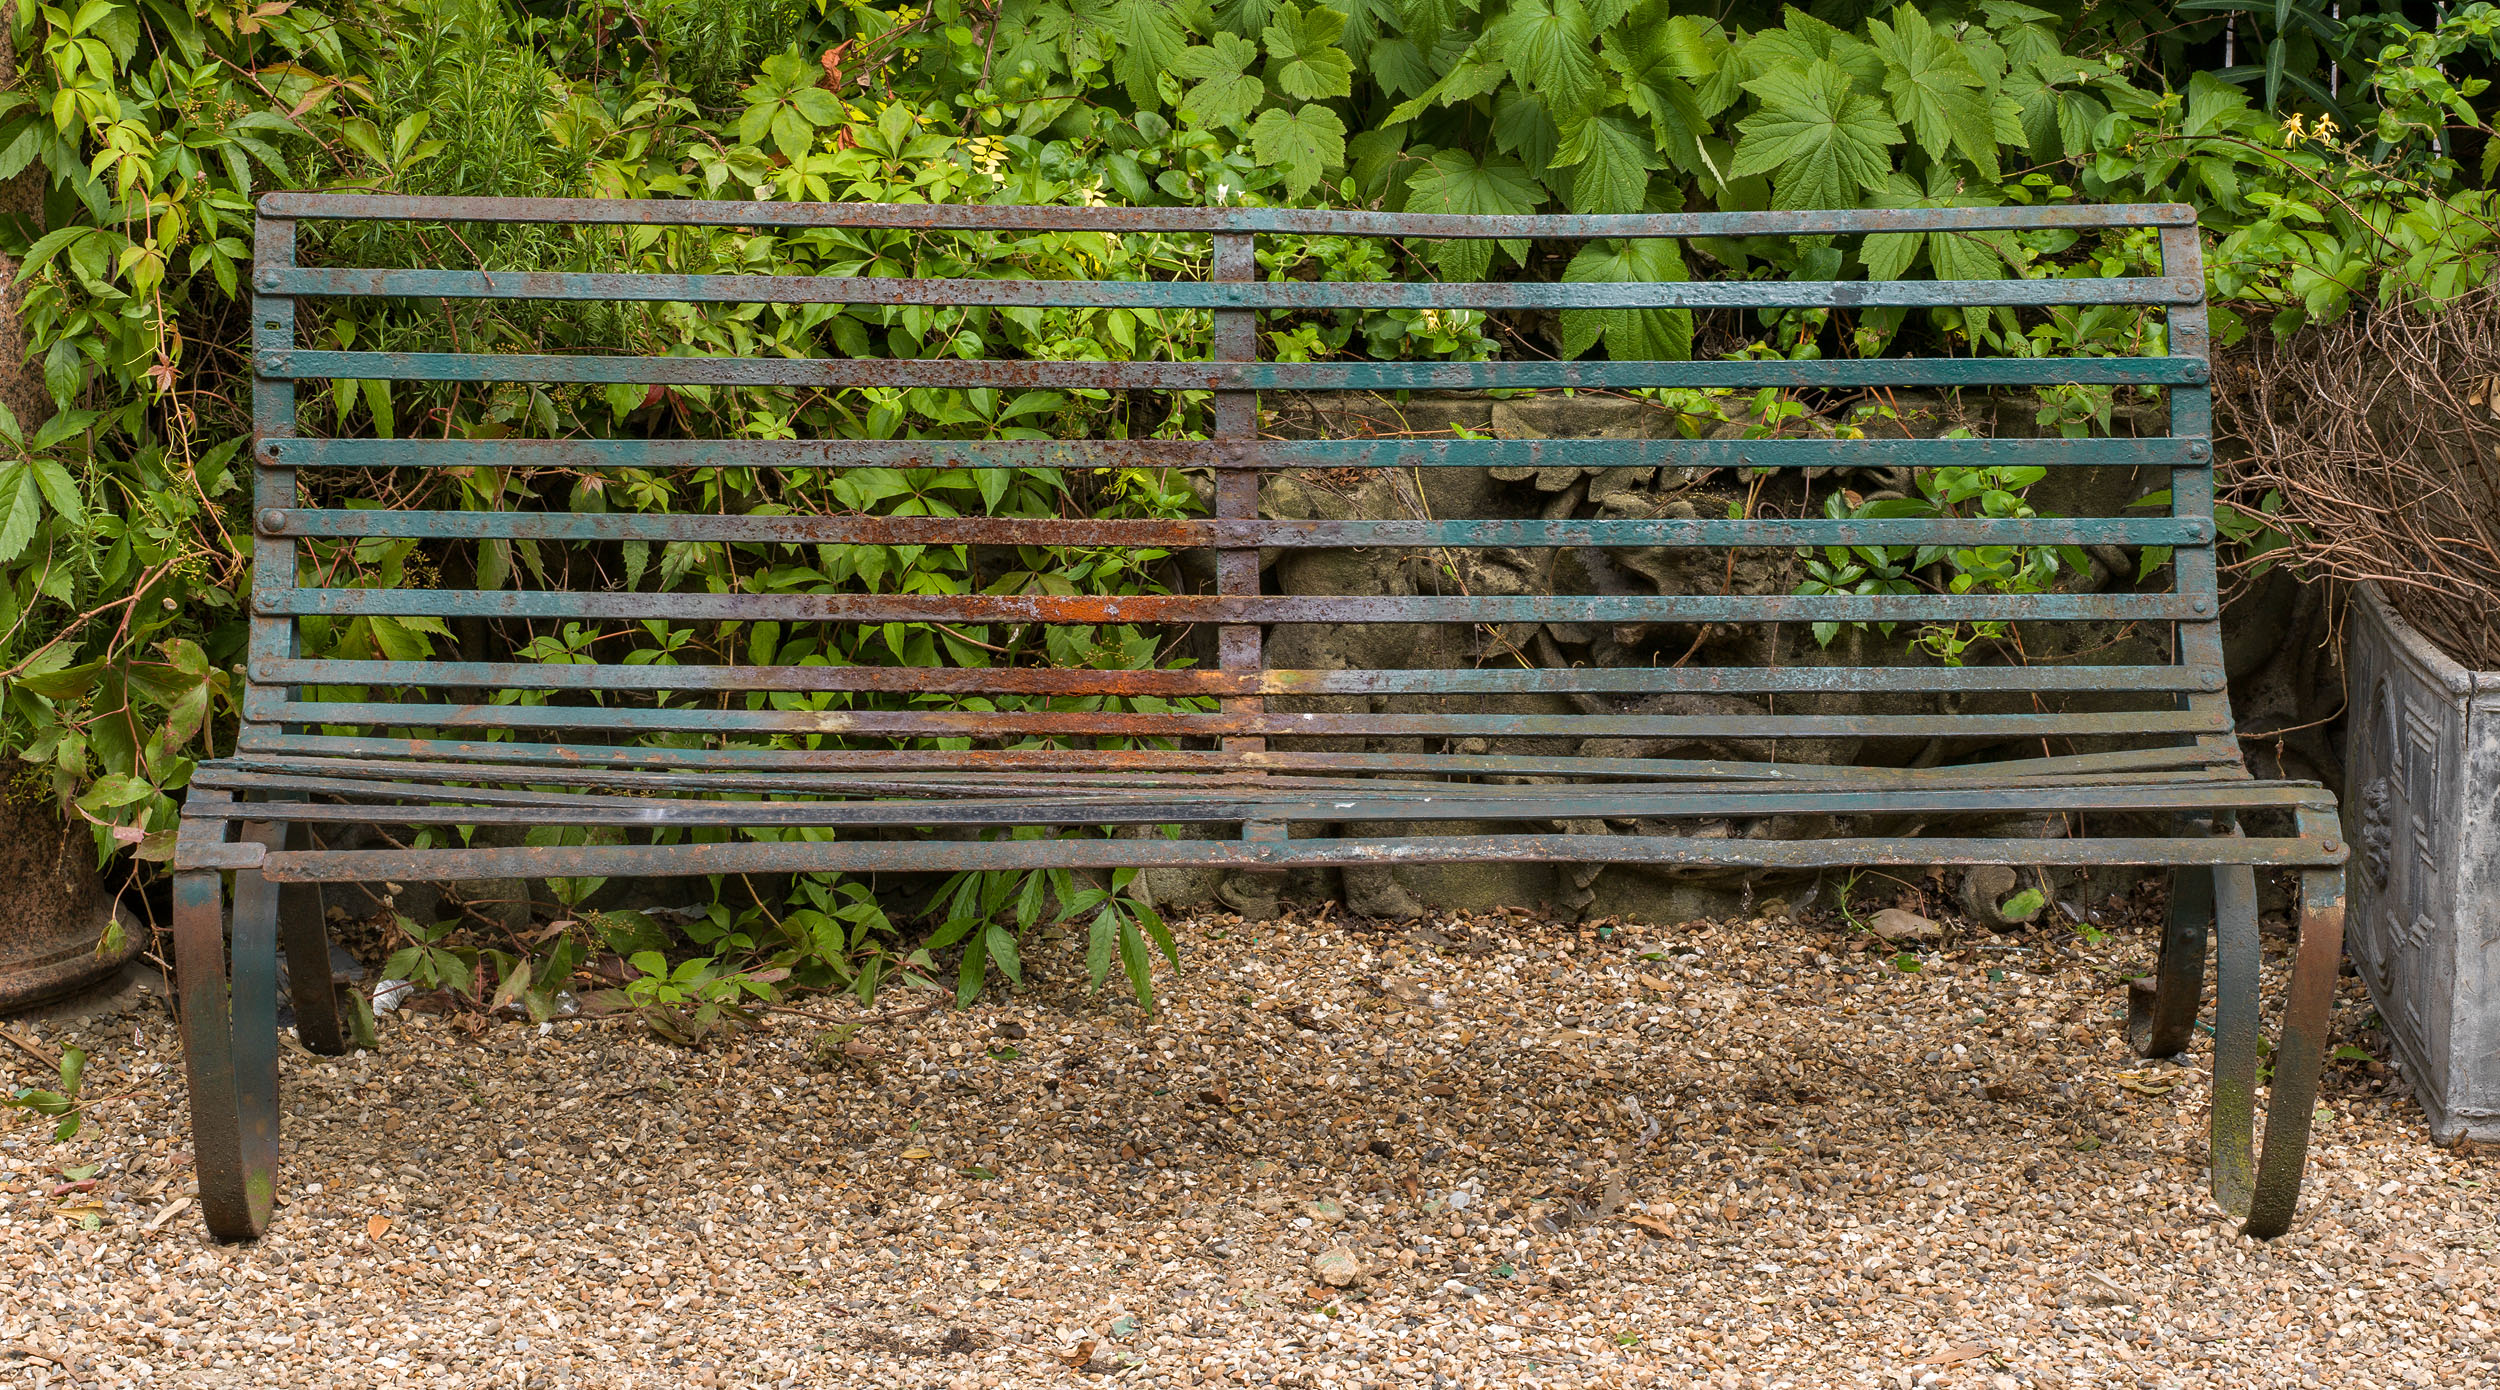 A Victorian wrought iron garden bench

